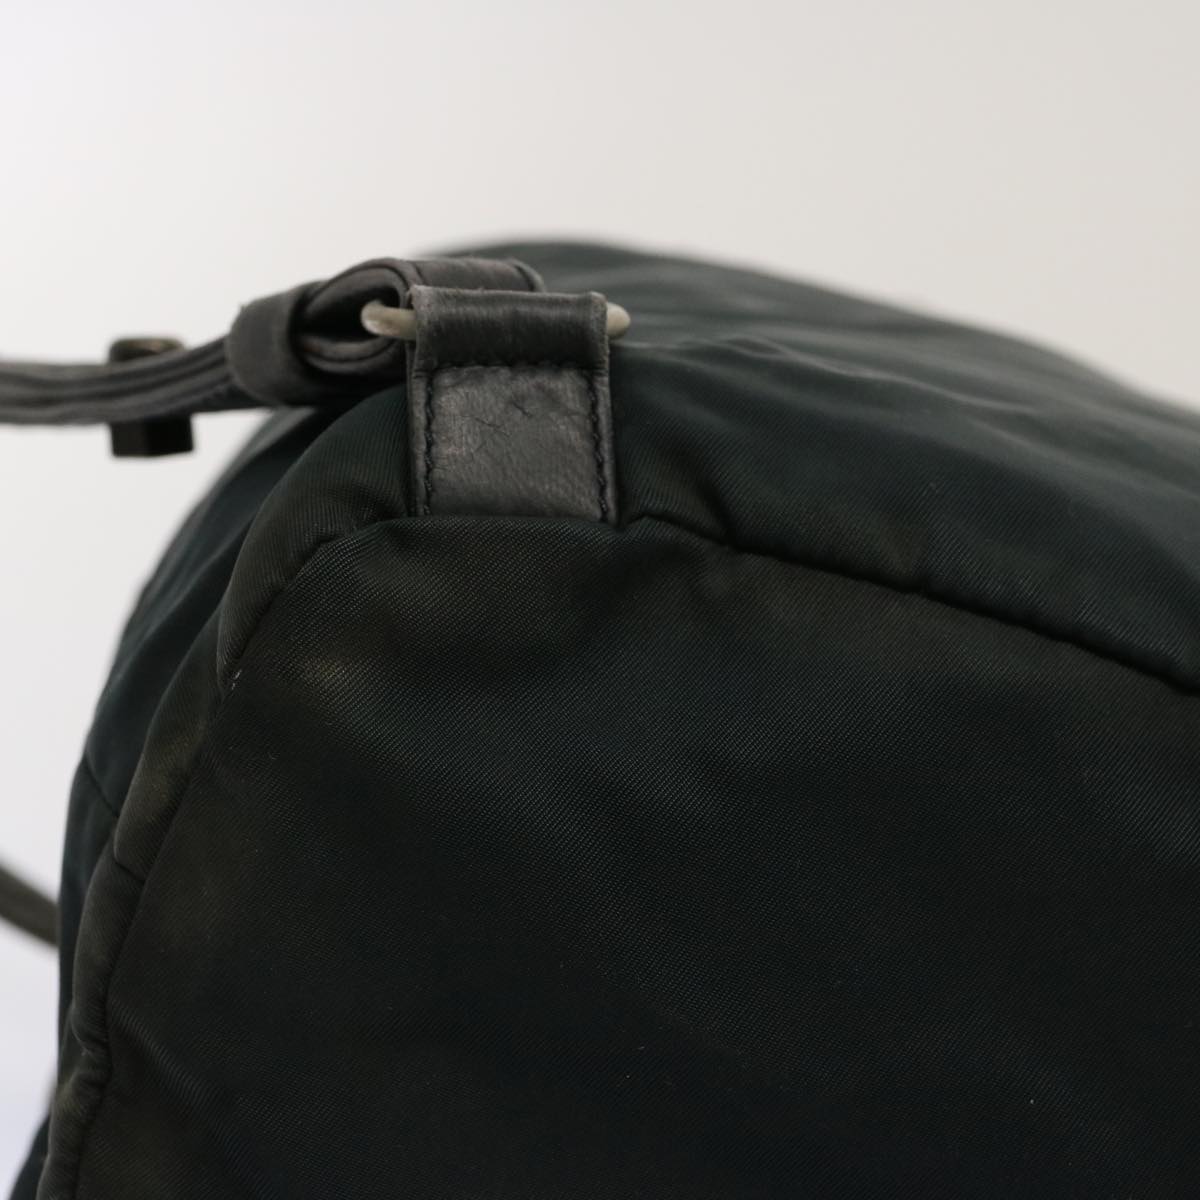 PRADA Backpack Nylon Green Auth bs13480